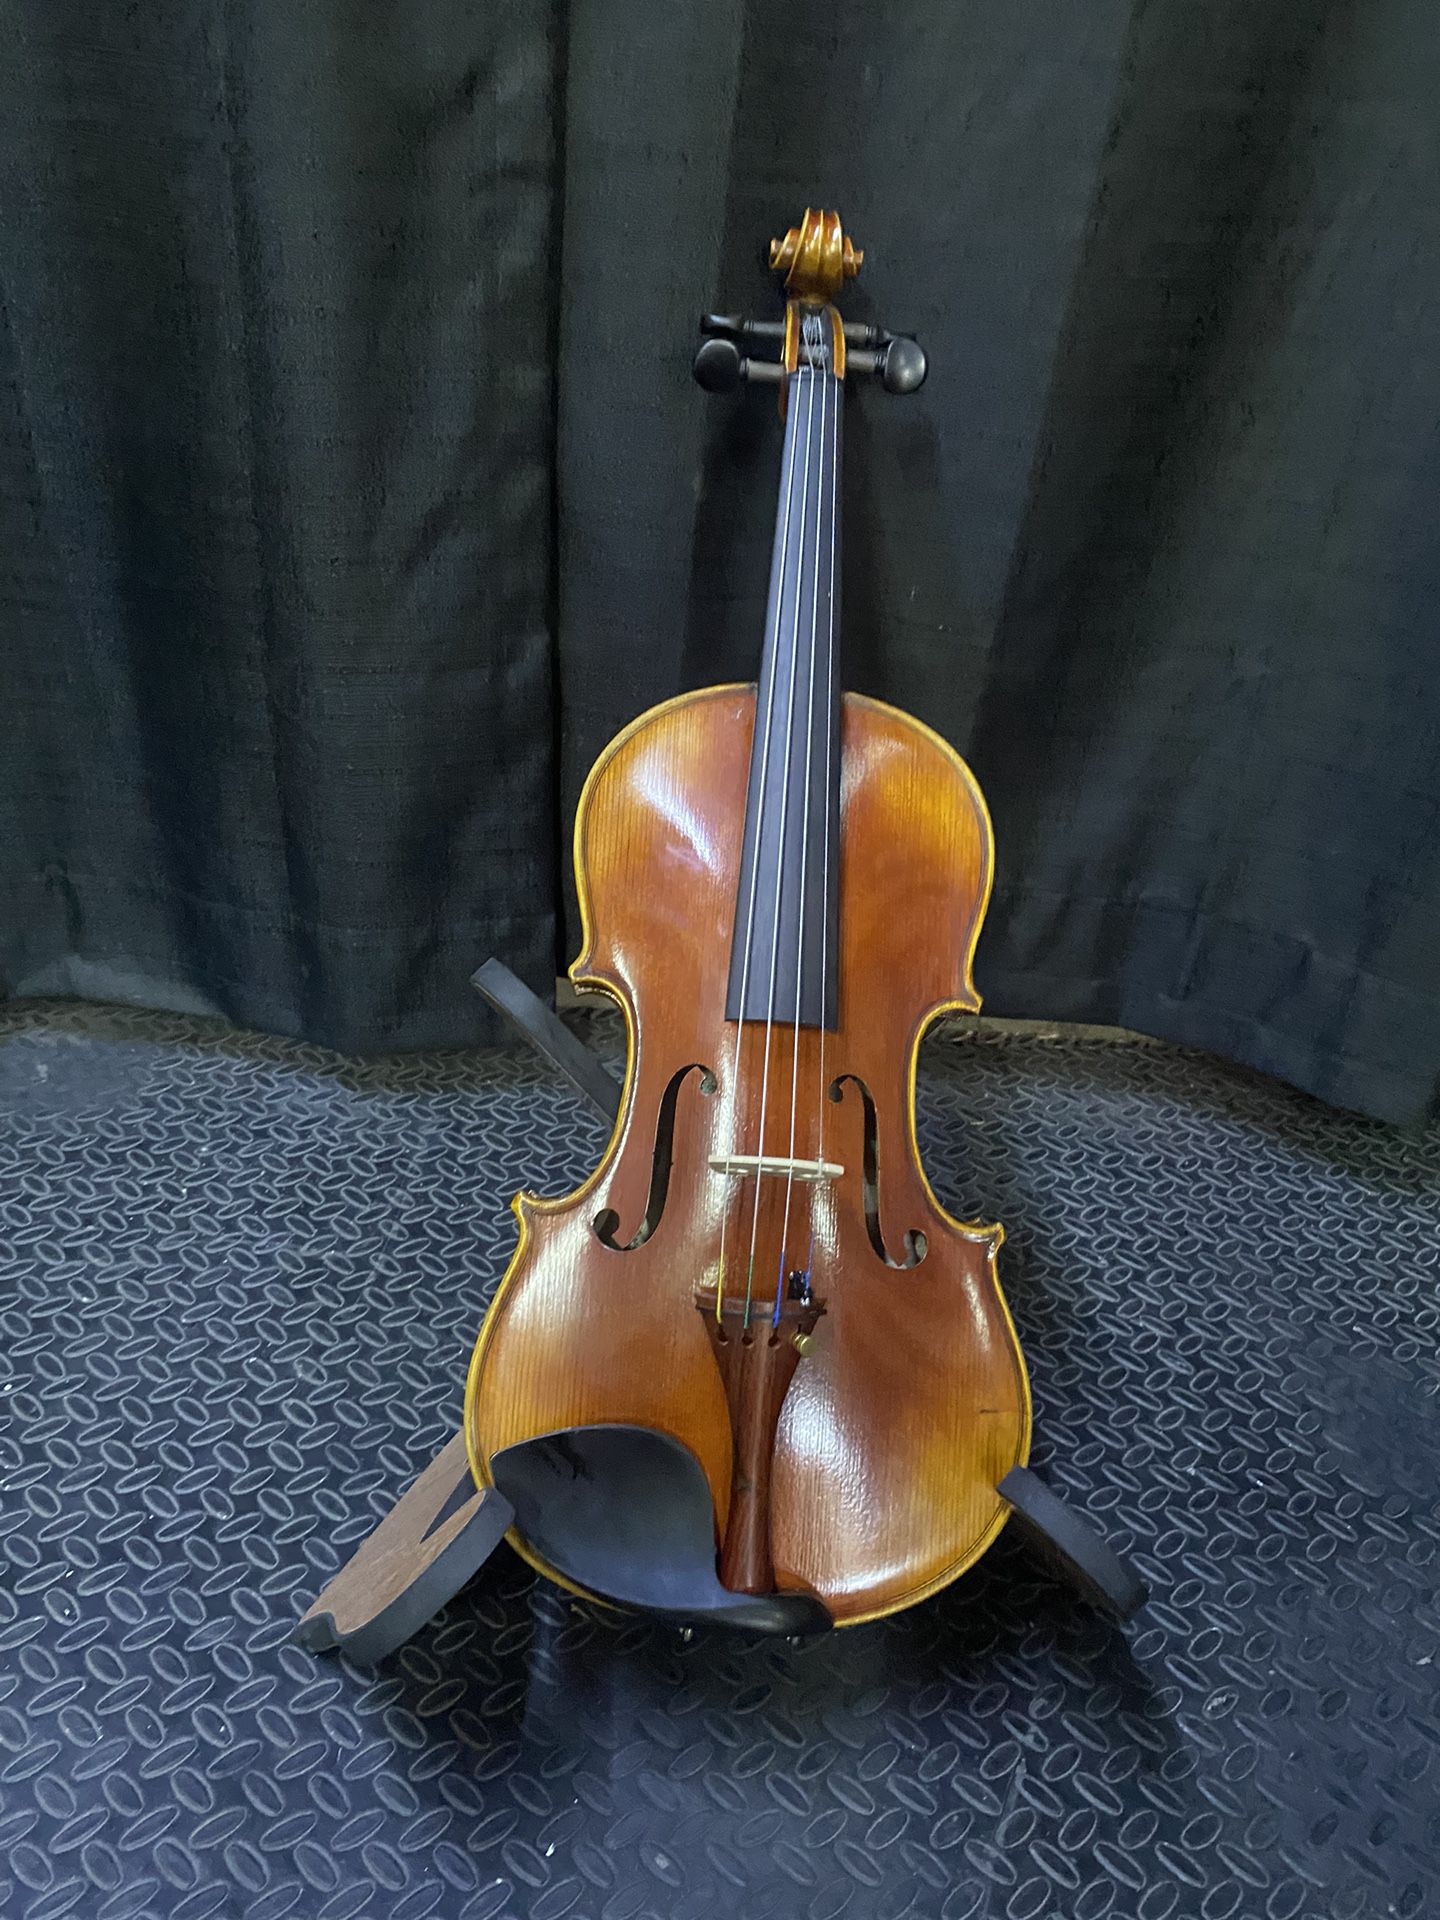 West Coast Strings Violin